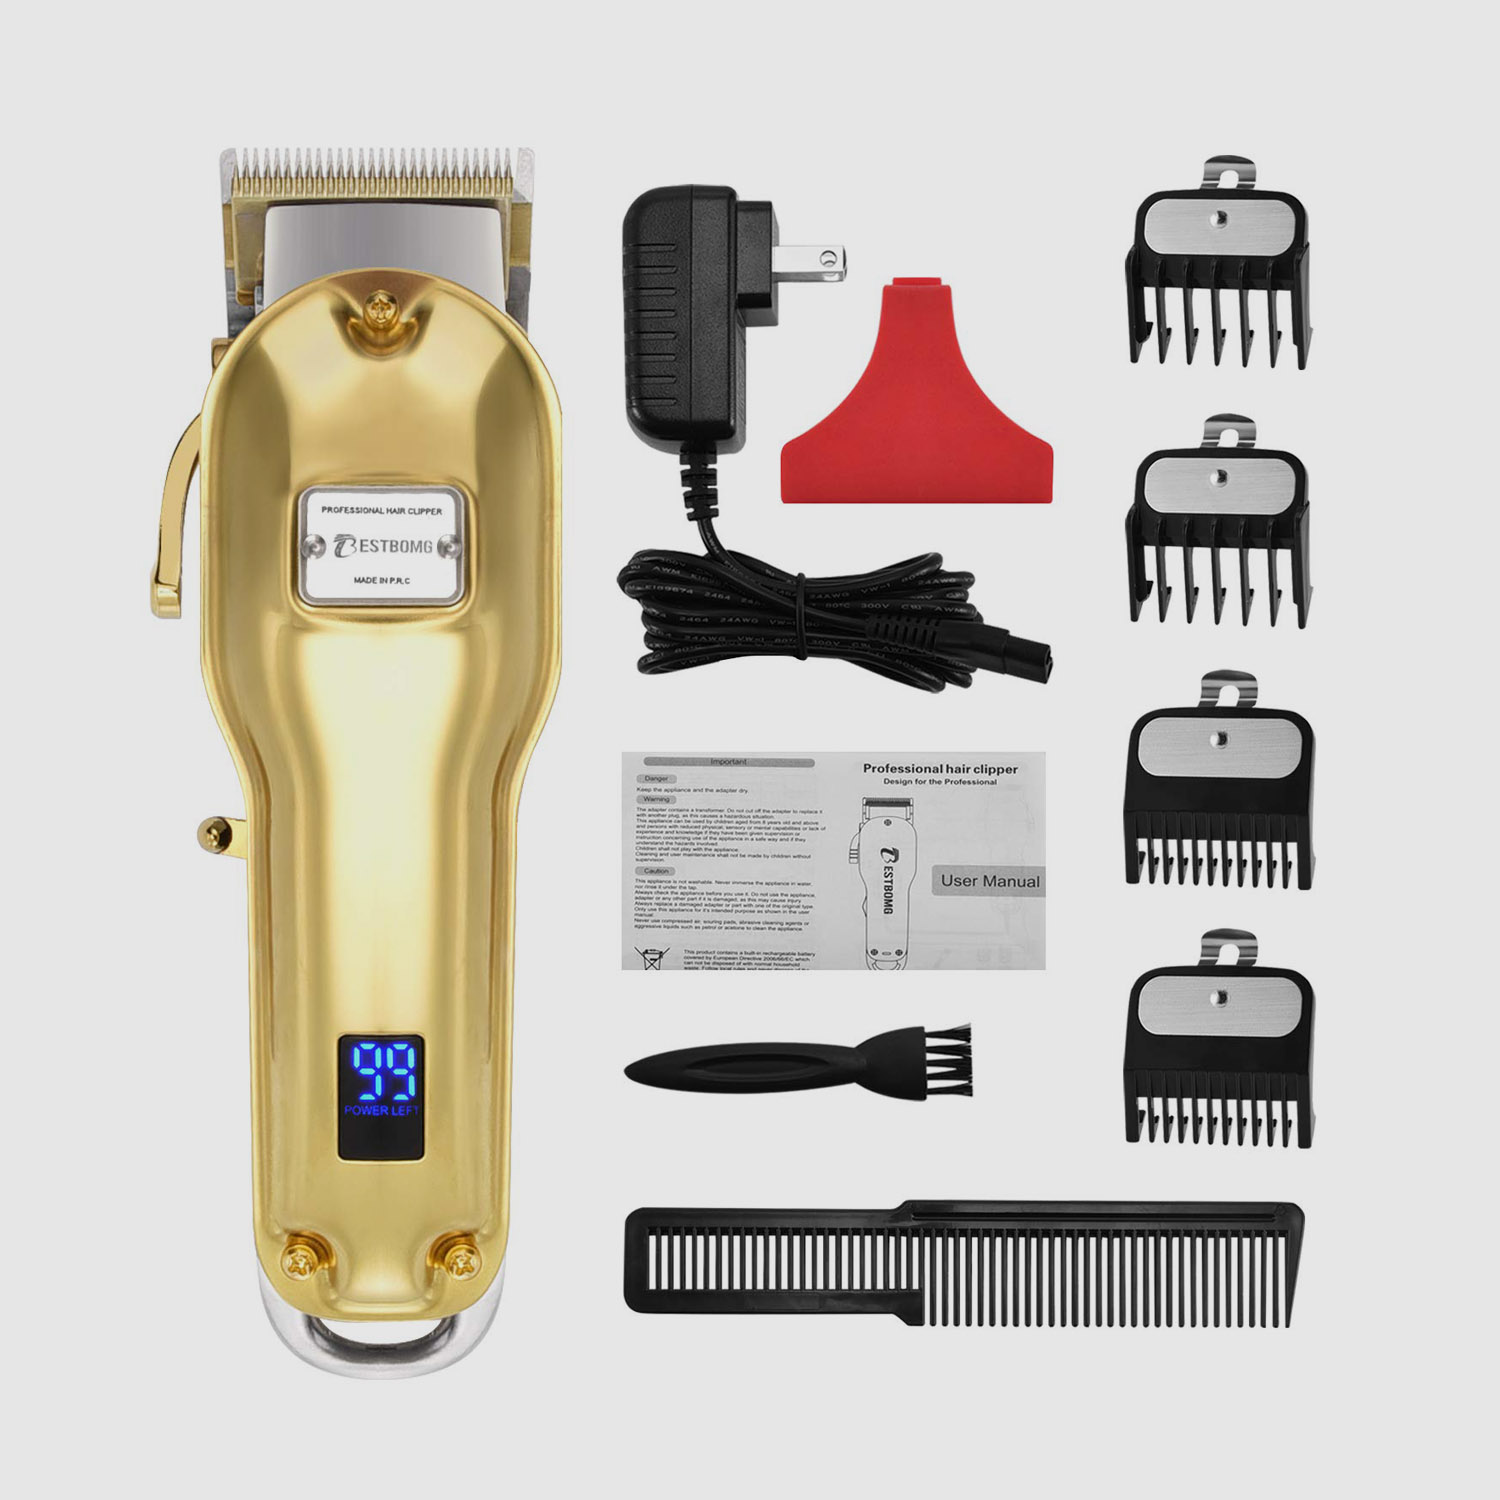 Tela LED para kit profissional para corte de cabelo sem fio